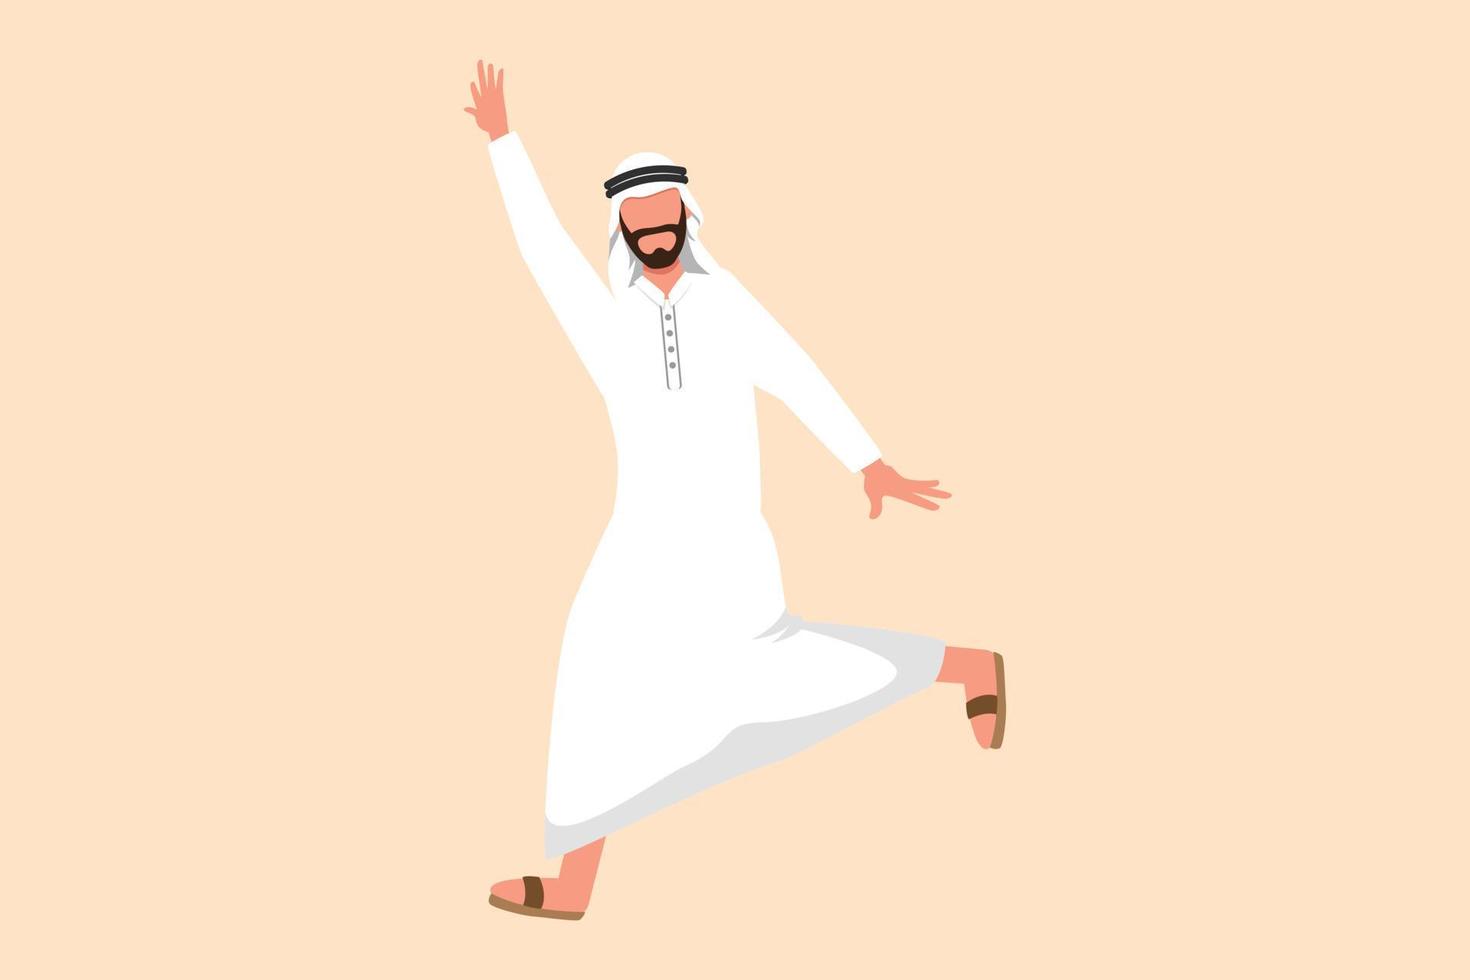 Business-Flachzeichnung glücklicher arabischer Geschäftsmann, der mit springt, spreizt beide Beine und hebt eine Hand. Executive Manager feiern die Erzielung steigender Produktverkäufe. Cartoon-Design-Vektor-Illustration vektor